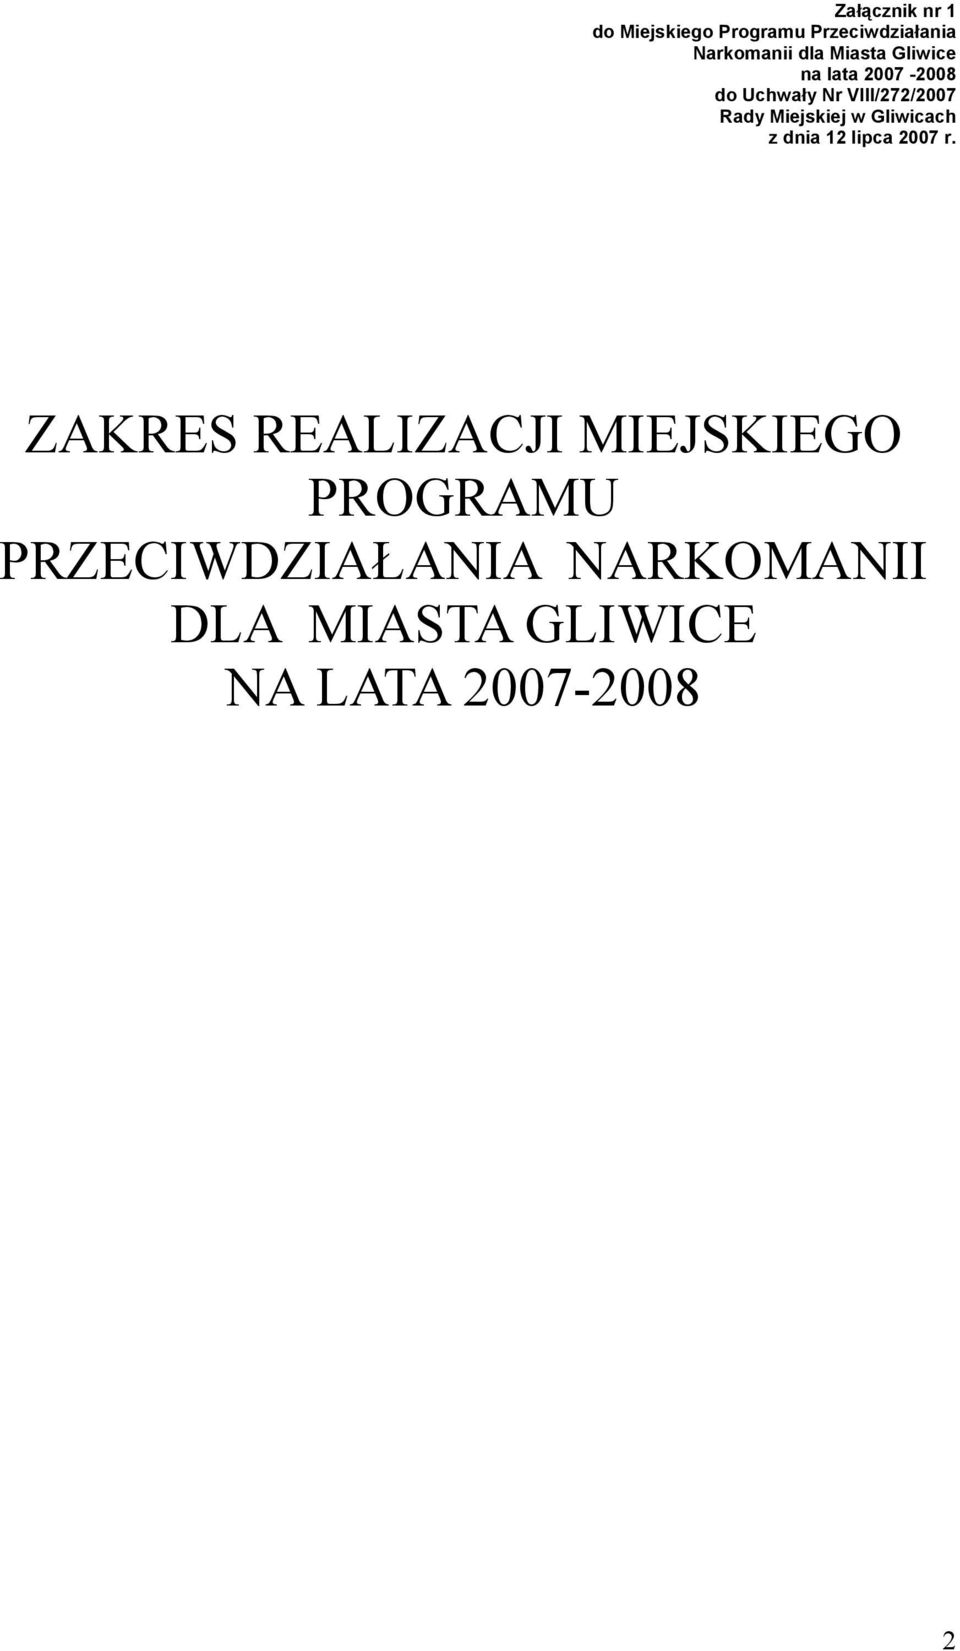 Miejskiej w Gliwicach z dnia 12 lipca 2007 r.